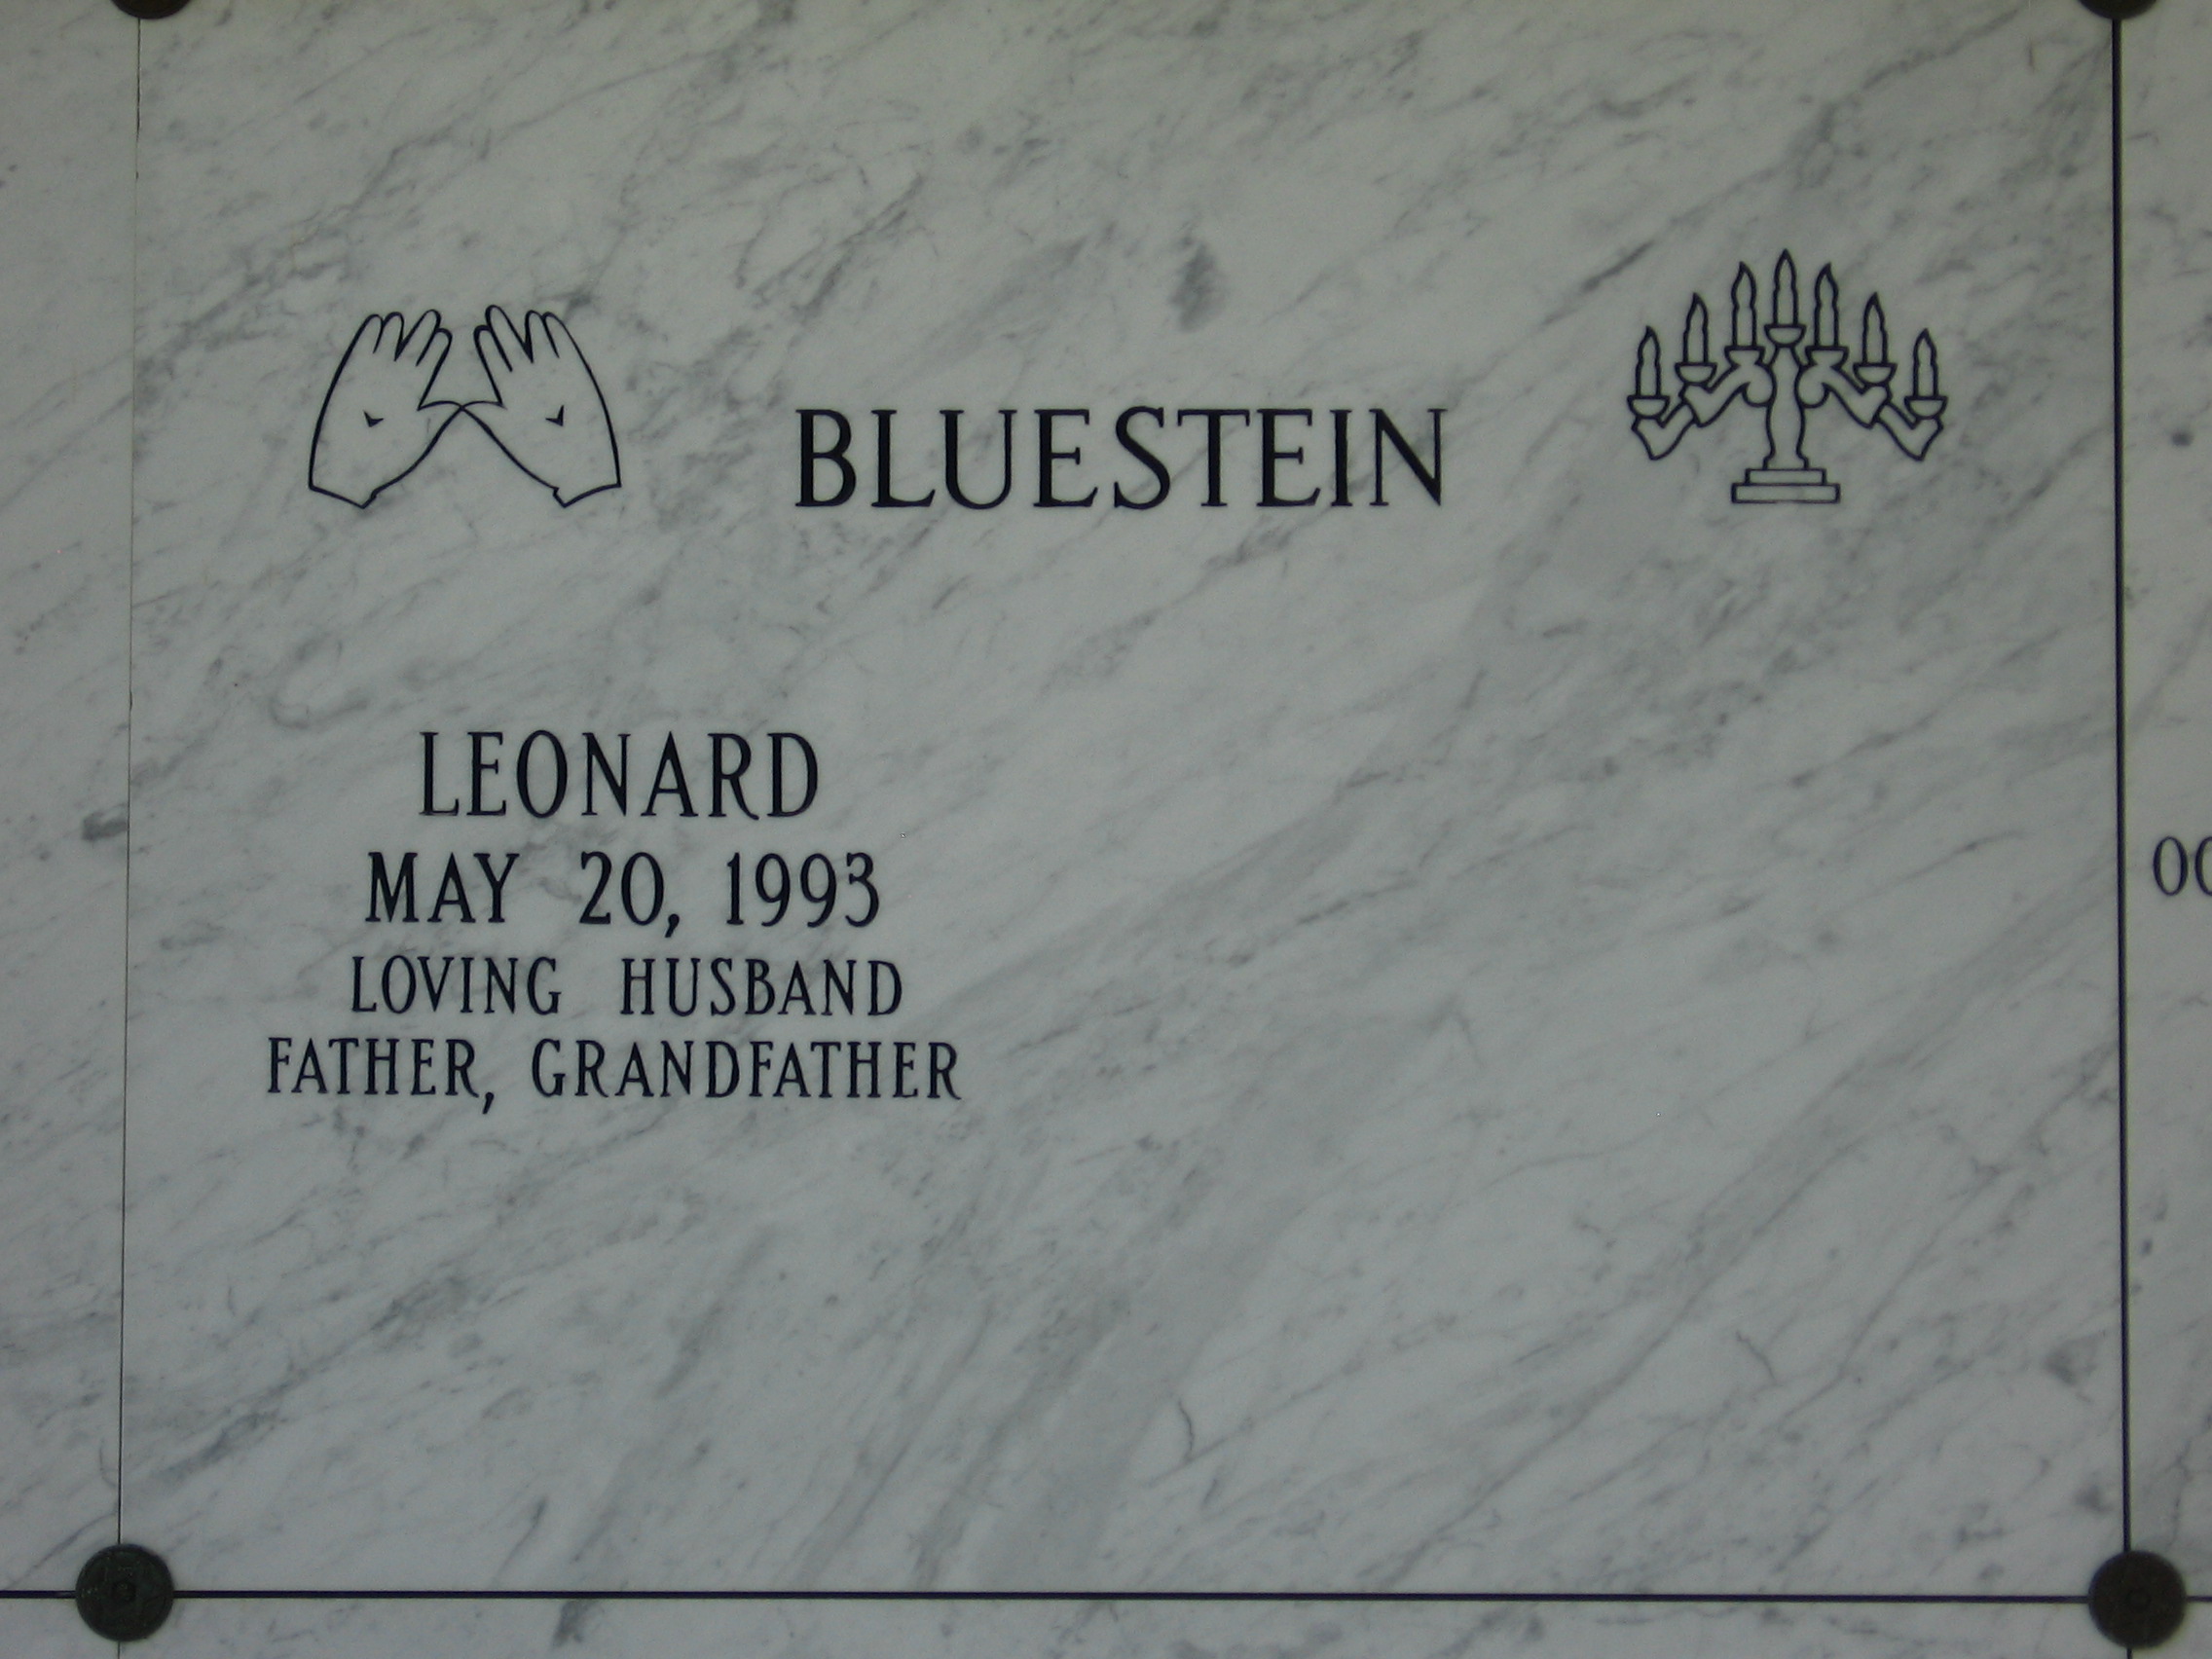 Leonard Bluestein